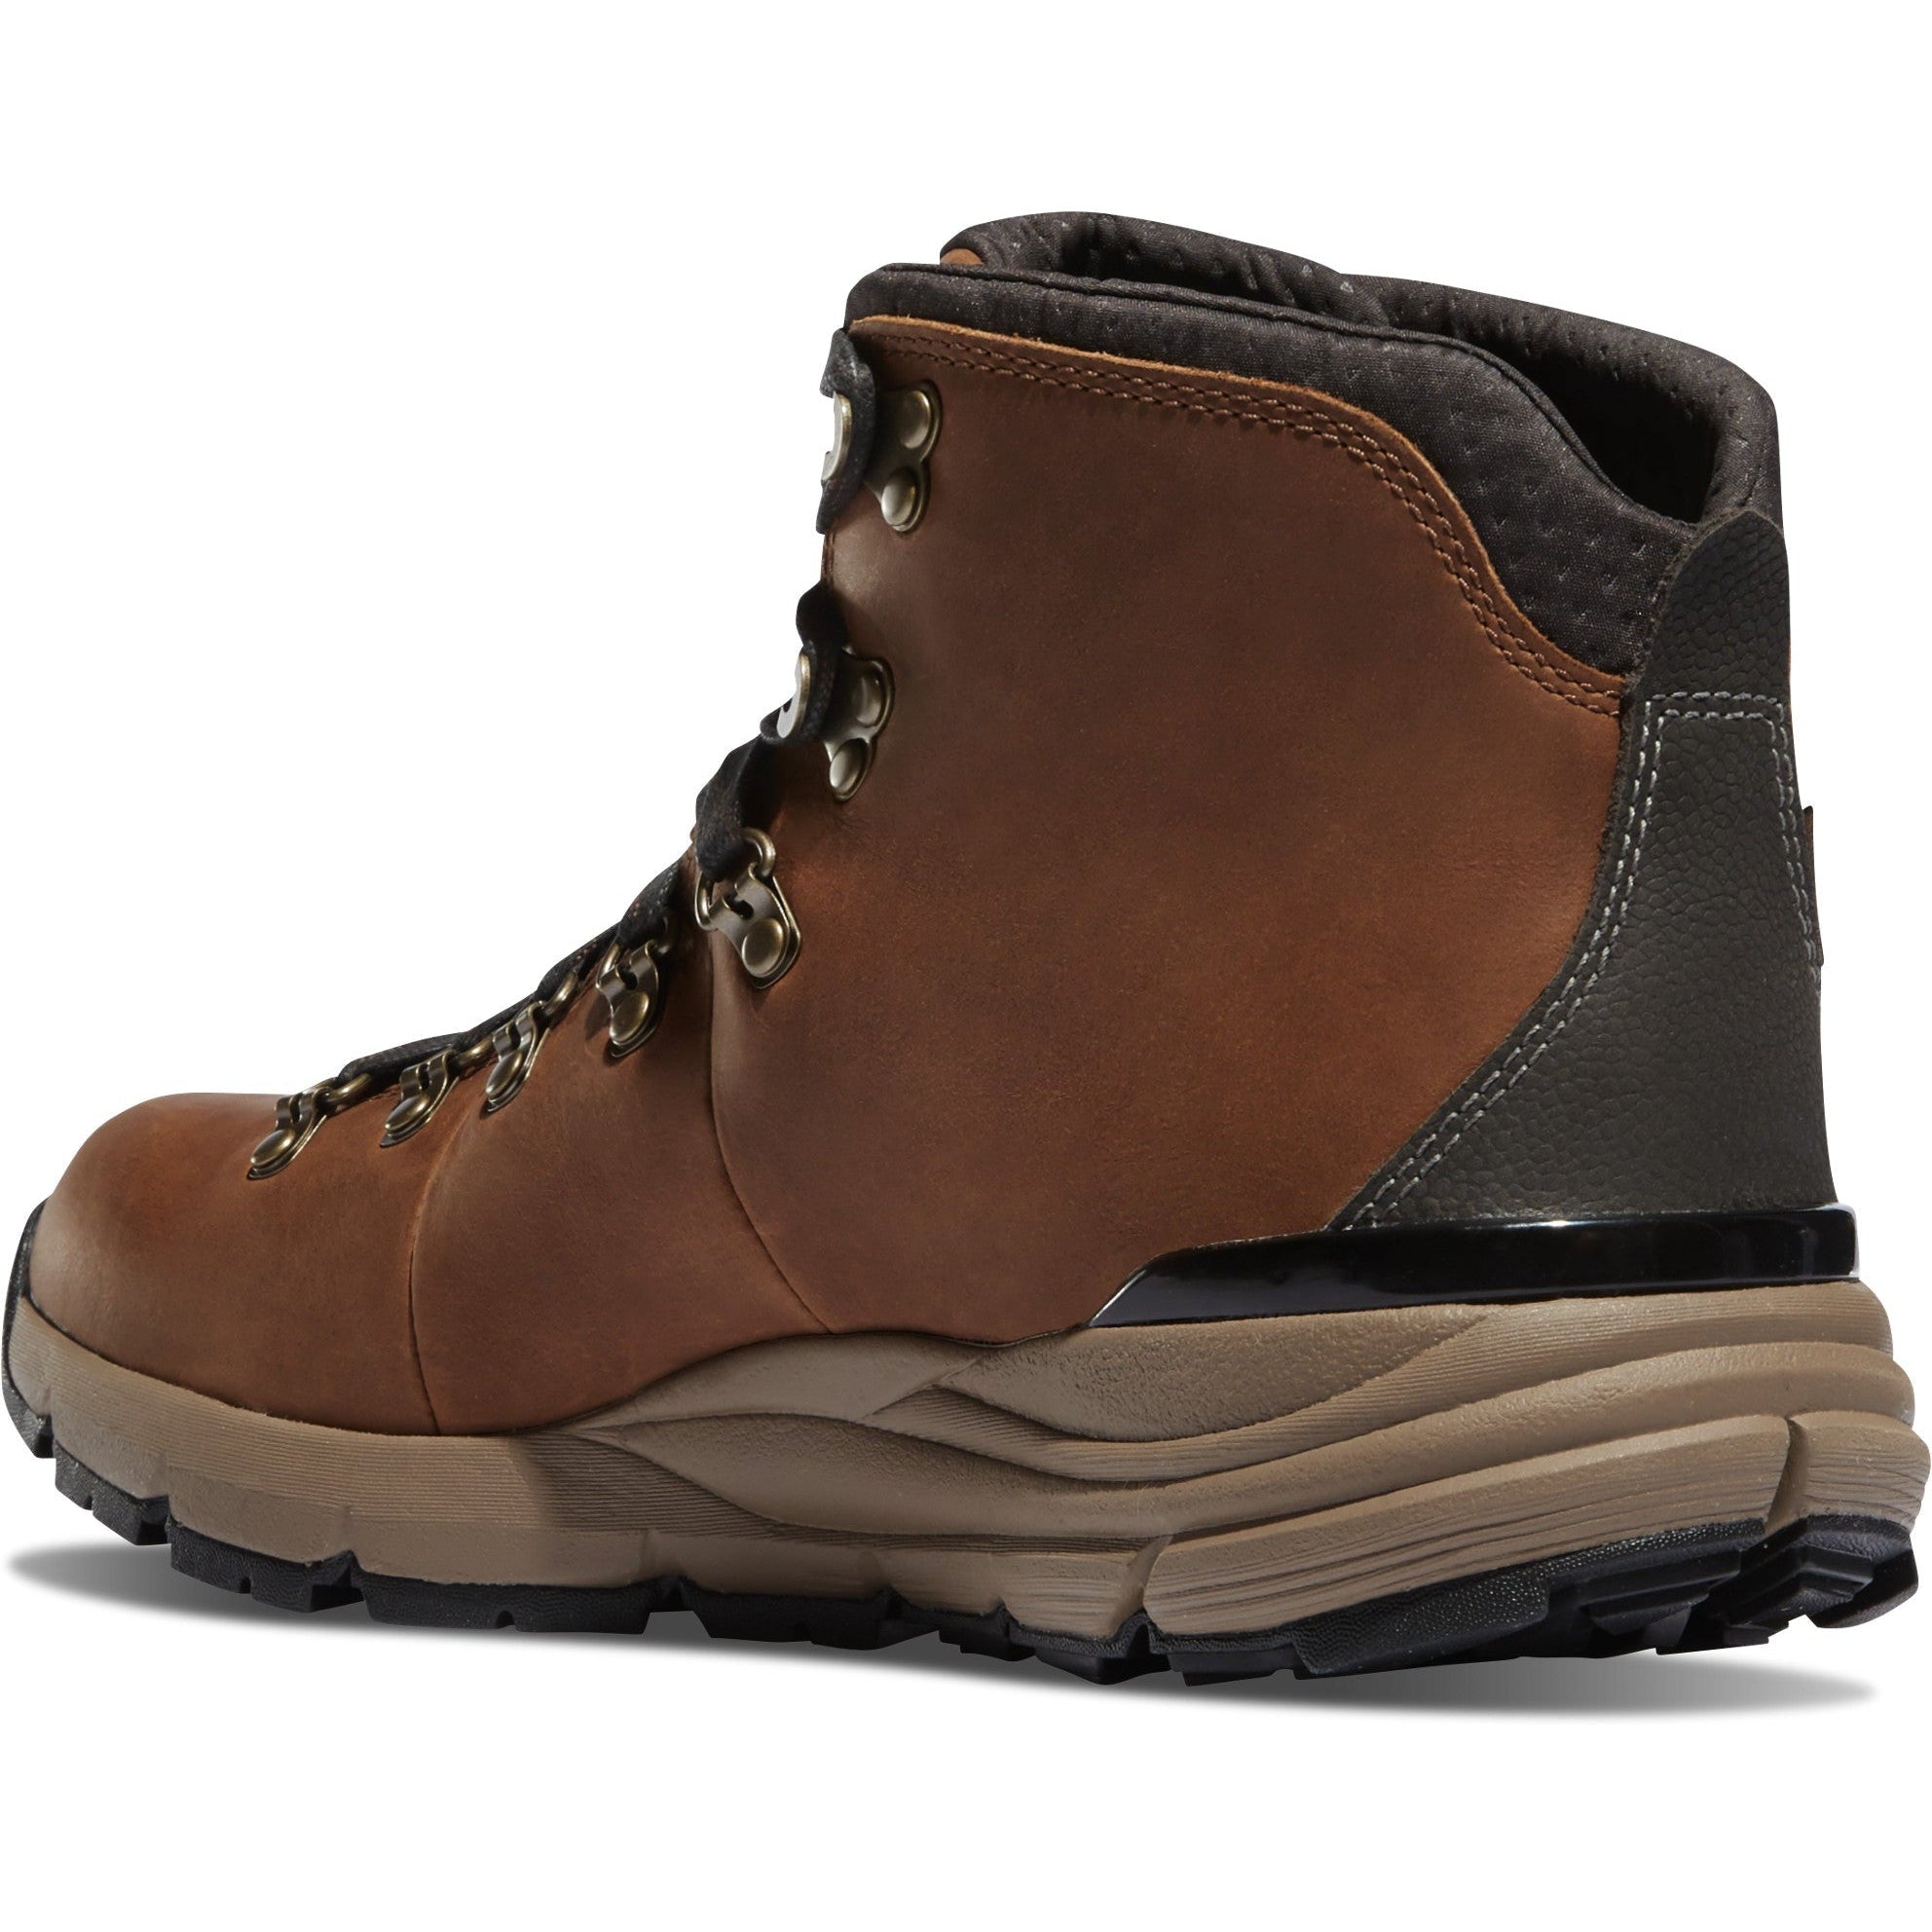 Danner Men's Mountain 600 4.5" WP Hiking Boot - Brown - 62250  - Overlook Boots